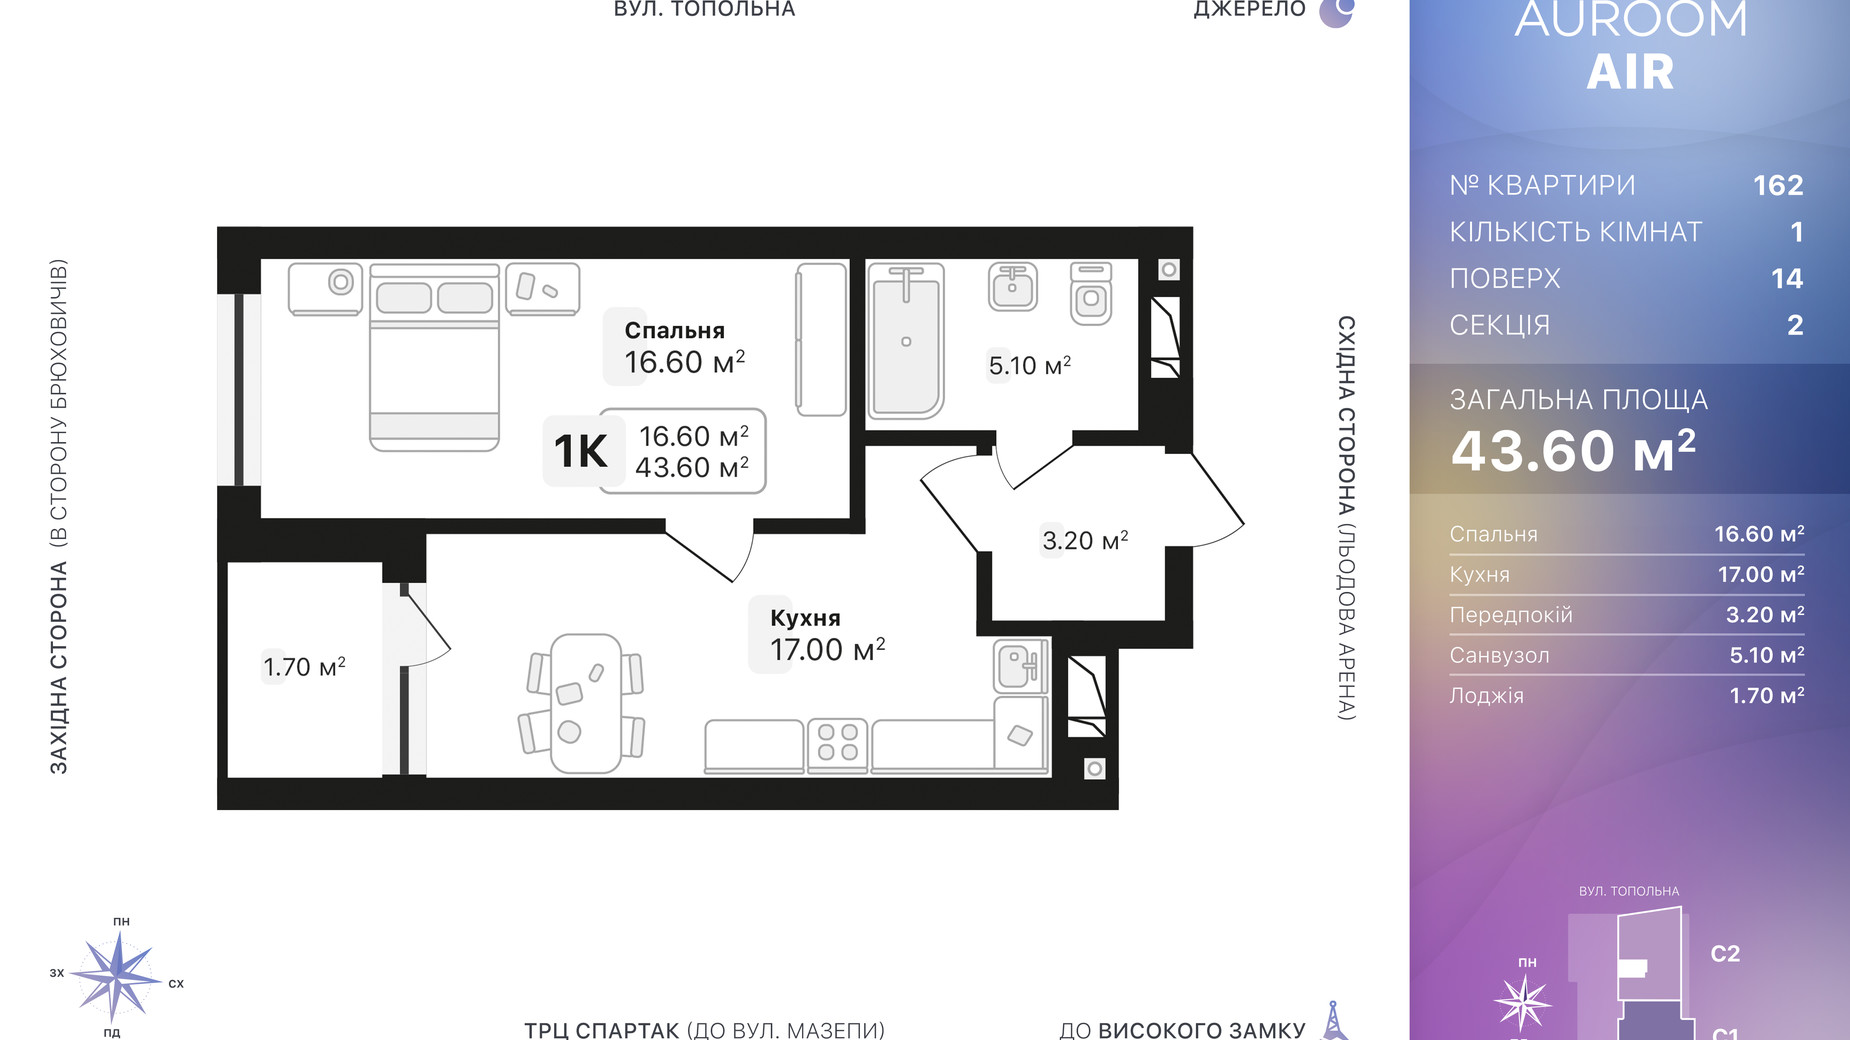 Планировка 1-комнатной квартиры в ЖК Auroom Air 43.6 м², фото 552437